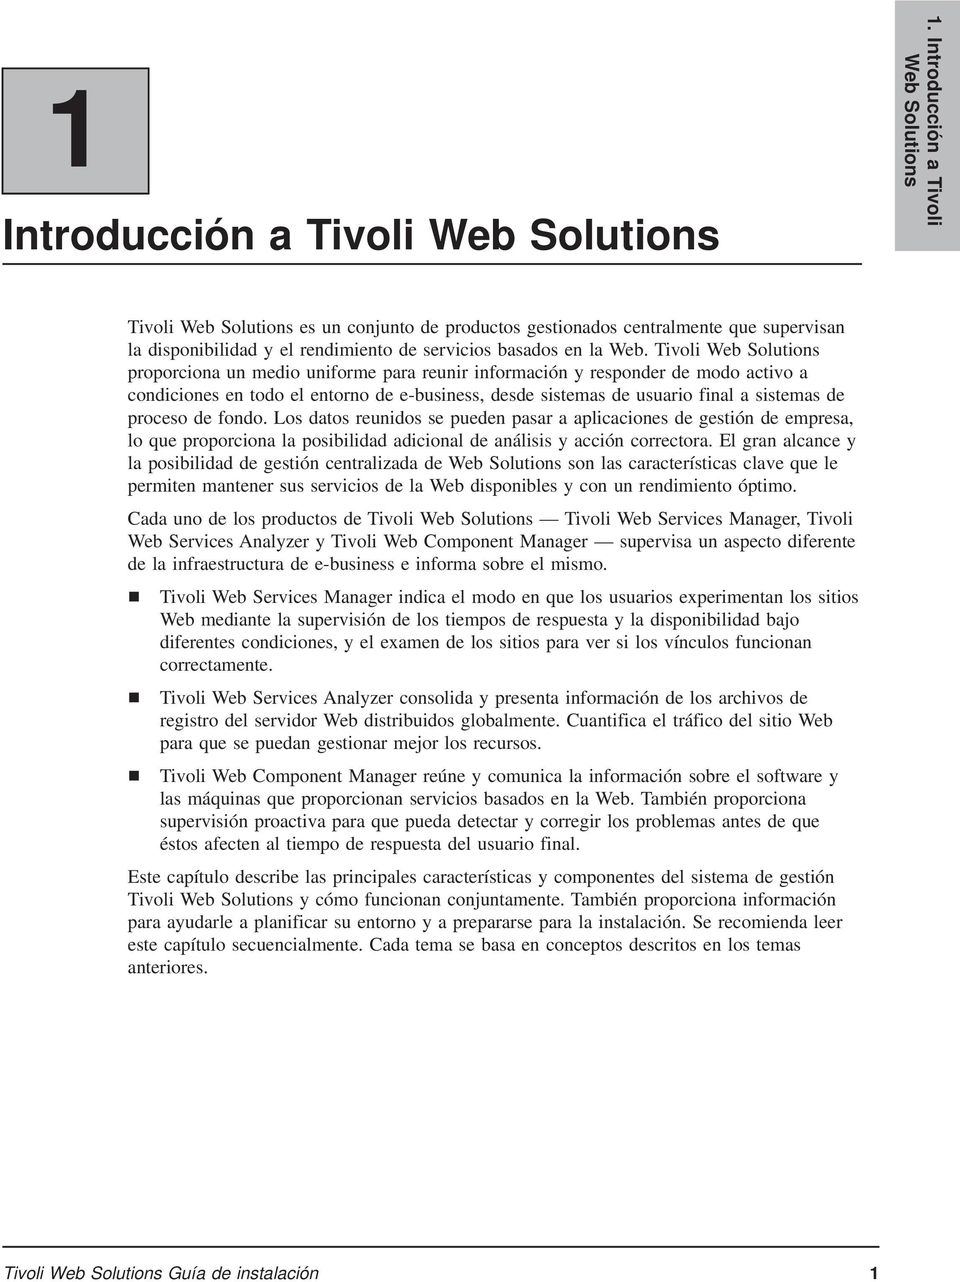 Tivoli Web Solutions proporciona un medio uniforme para reunir información y responder de modo activo a condiciones en todo el entorno de e-business, desde sistemas de usuario final a sistemas de